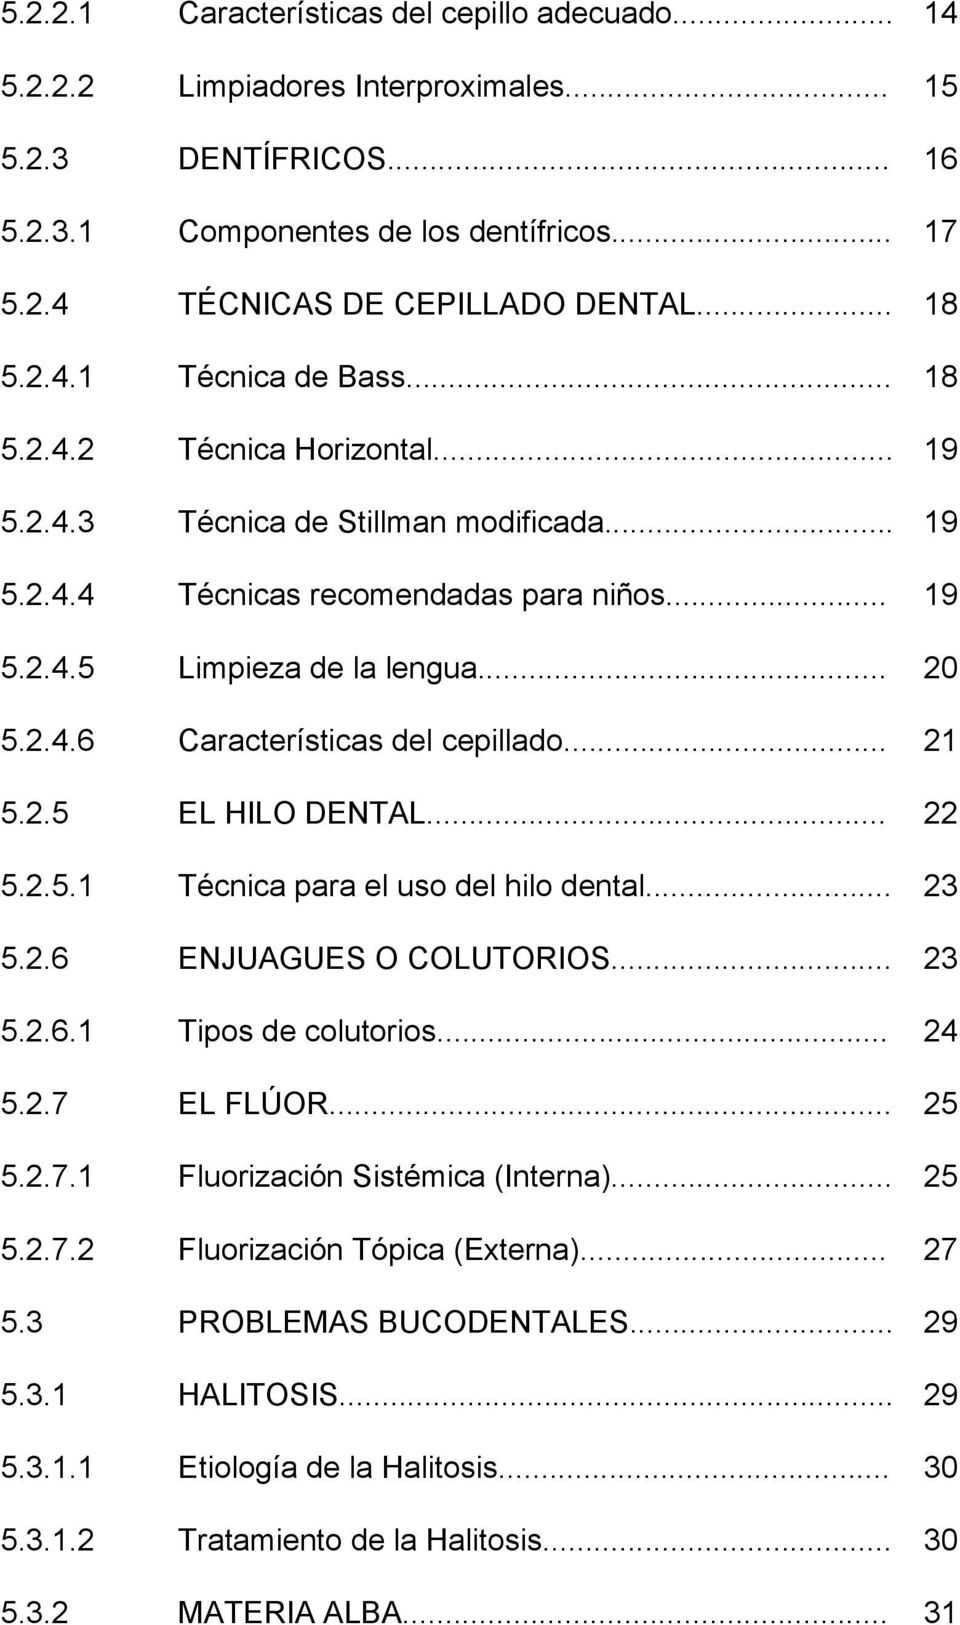 2.4.6 Características del cepillado... 21 5.2.5 EL HILO DENTAL... 22 5.2.5.1 Técnica para el uso del hilo dental... 23 5.2.6 ENJUAGUES O COLUTORIOS... 23 5.2.6.1 Tipos de colutorios... 24 5.2.7 EL FLÚOR.